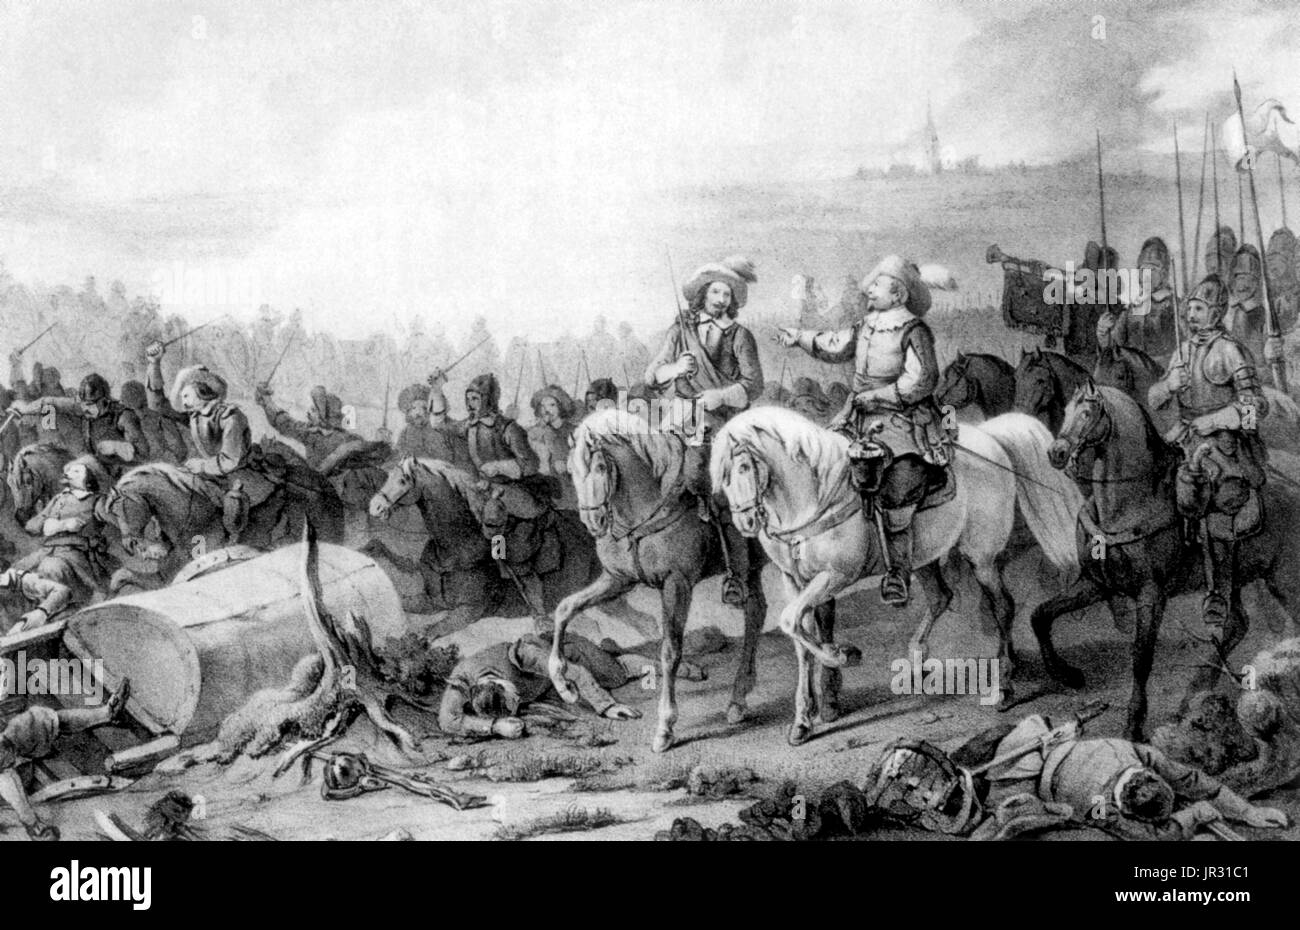 La bataille de Breitenfeld, fut livrée à un carrefour près de la ville fortifiée de Leipzig le 17 septembre 1631. La bataille a duré plus de six heures. Les deux premières heures se composait d'un échange de tirs d'artillerie, suivie d'une attaque impériale avec la cavalerie des deux ailes aux deux extrémités de la ligne protestante. L'attaque de cavalerie les troupes saxonnes routés sur le flanc gauche suédois. L'armée impériale a mené une attaque générale d'exploiter l'exposé flanc gauche. Les Suédois repositionné leur deuxième ligne pour couvrir le flanc gauche et contre-attaquèrent avec leurs cavaliers. L'attaque sur la gauche impériale était dirigée p Banque D'Images